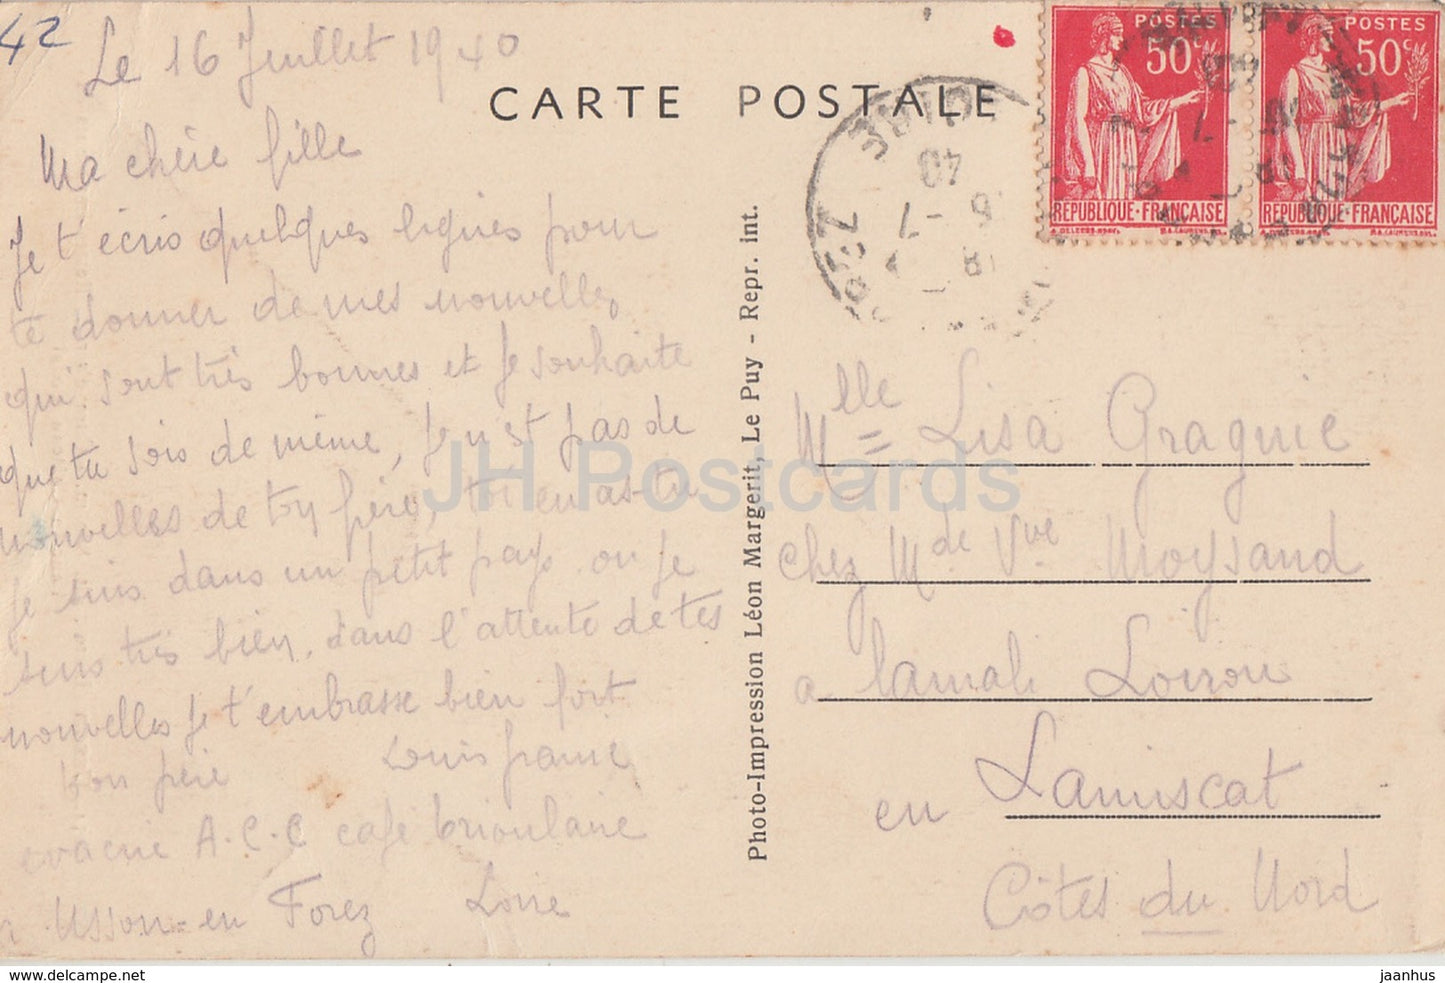 Usson - Cure d'air - Restes imposantes de l'ancien Château féodal - château - 3054 - carte postale ancienne - 1940 - France - occasion